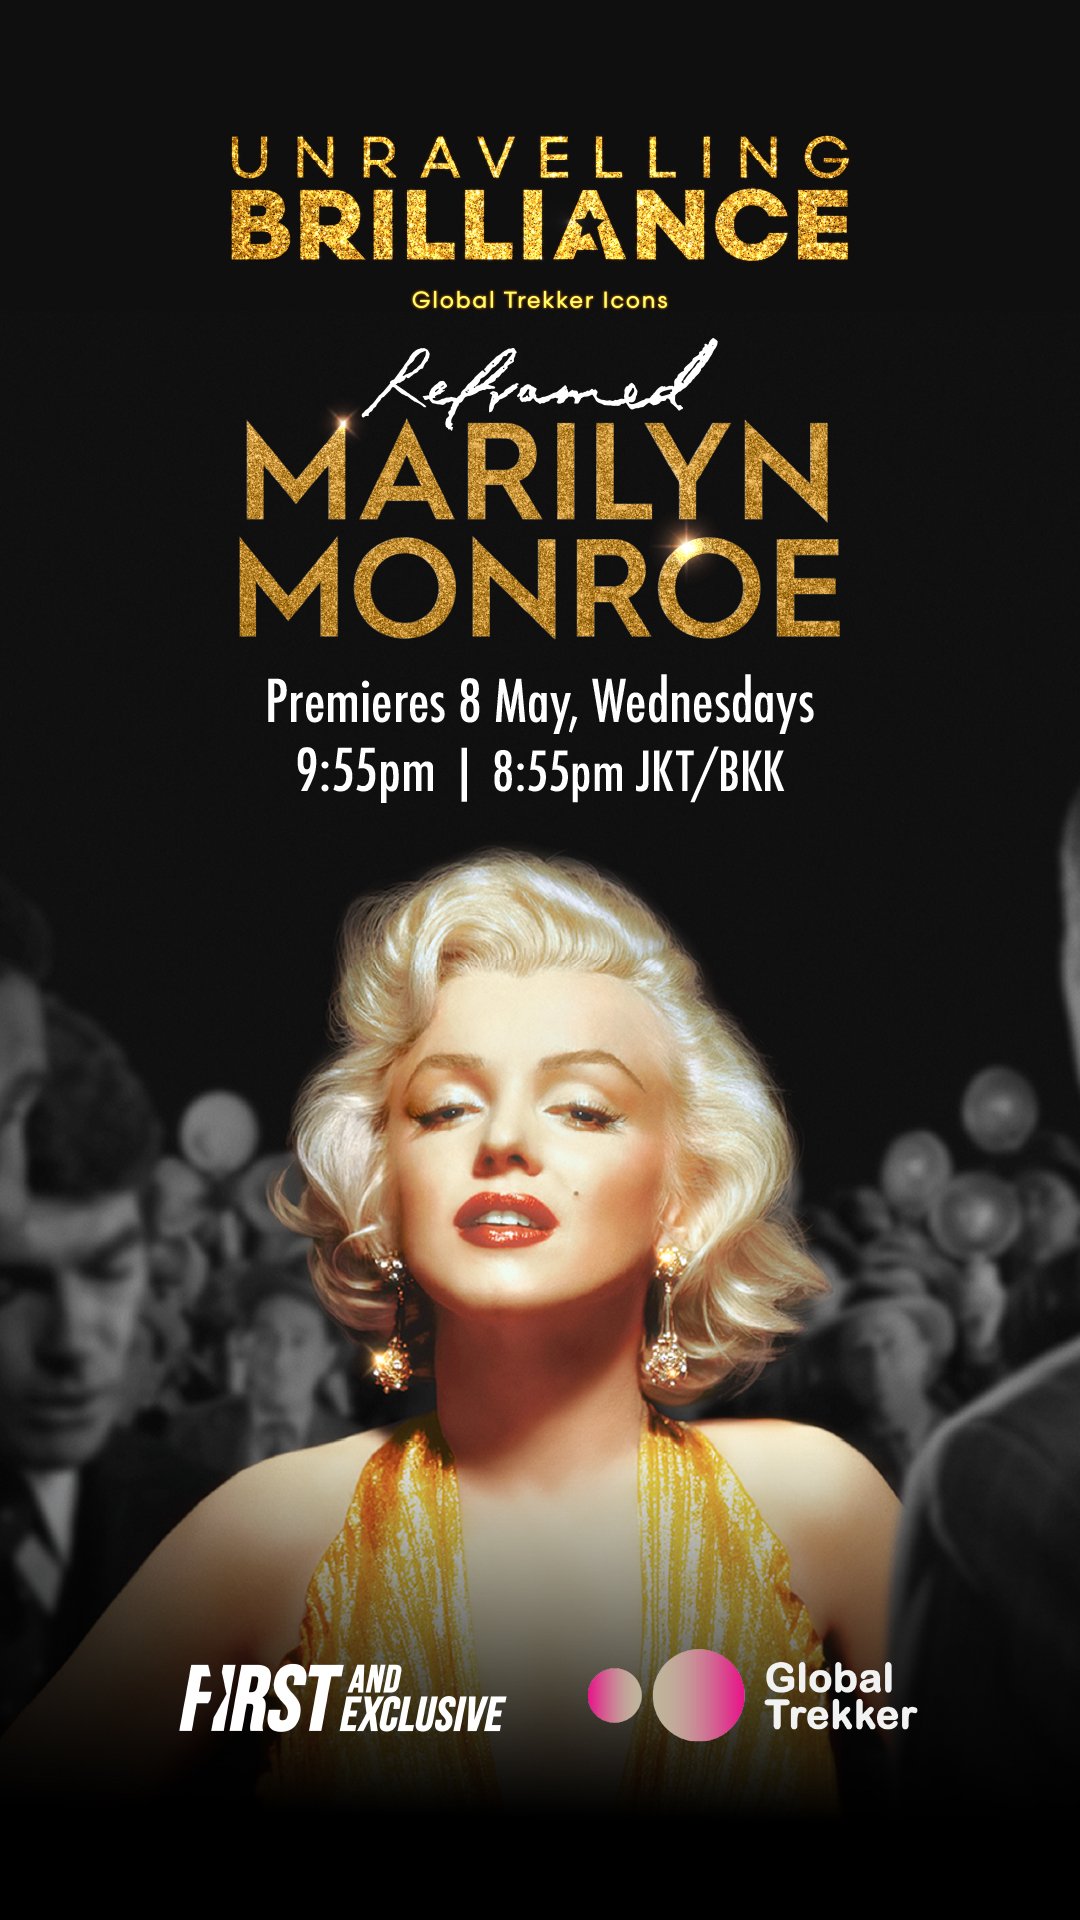 Marilyn Monroe_EndPage Image.jpg